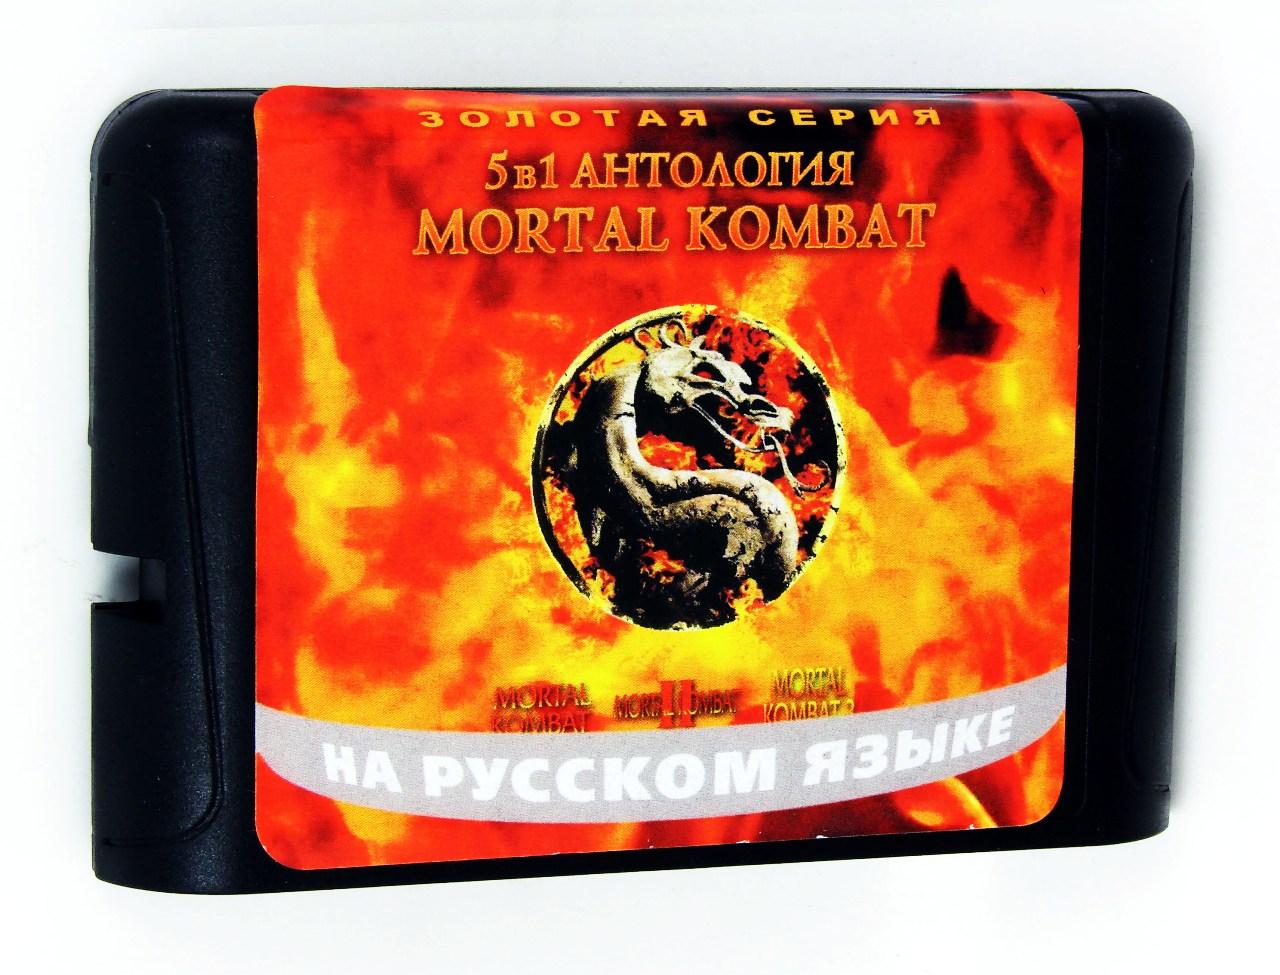   Sega AC 5001 5 in 1 ( Mortal Kombat) (Sega), Mortal Kombat 1-2-3-5, Ultimate